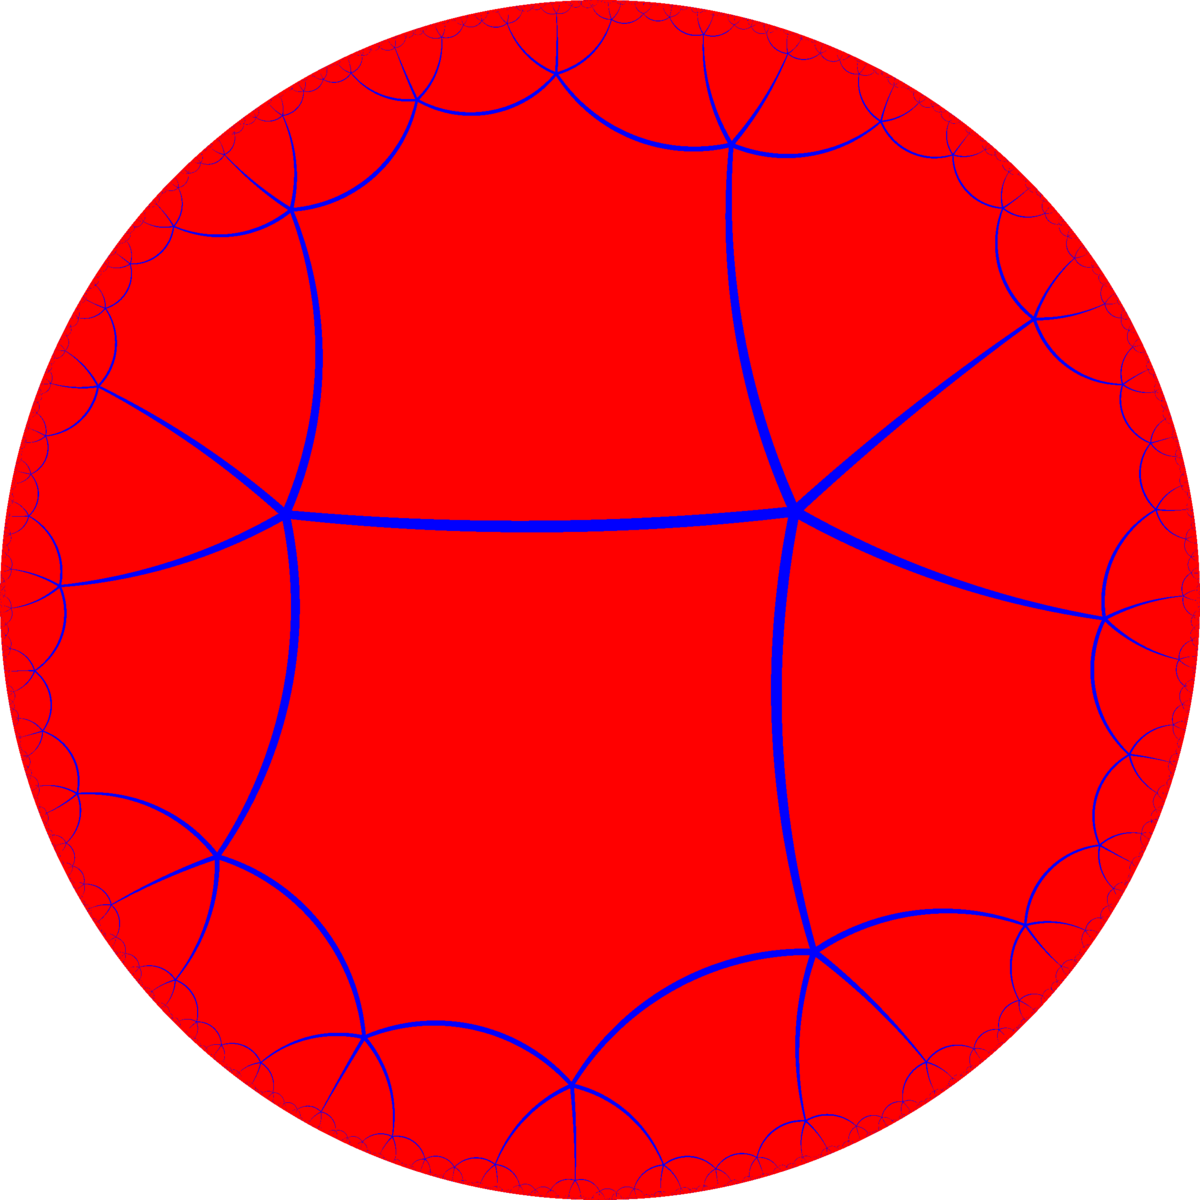 Order-5 Hexagonal Tiling